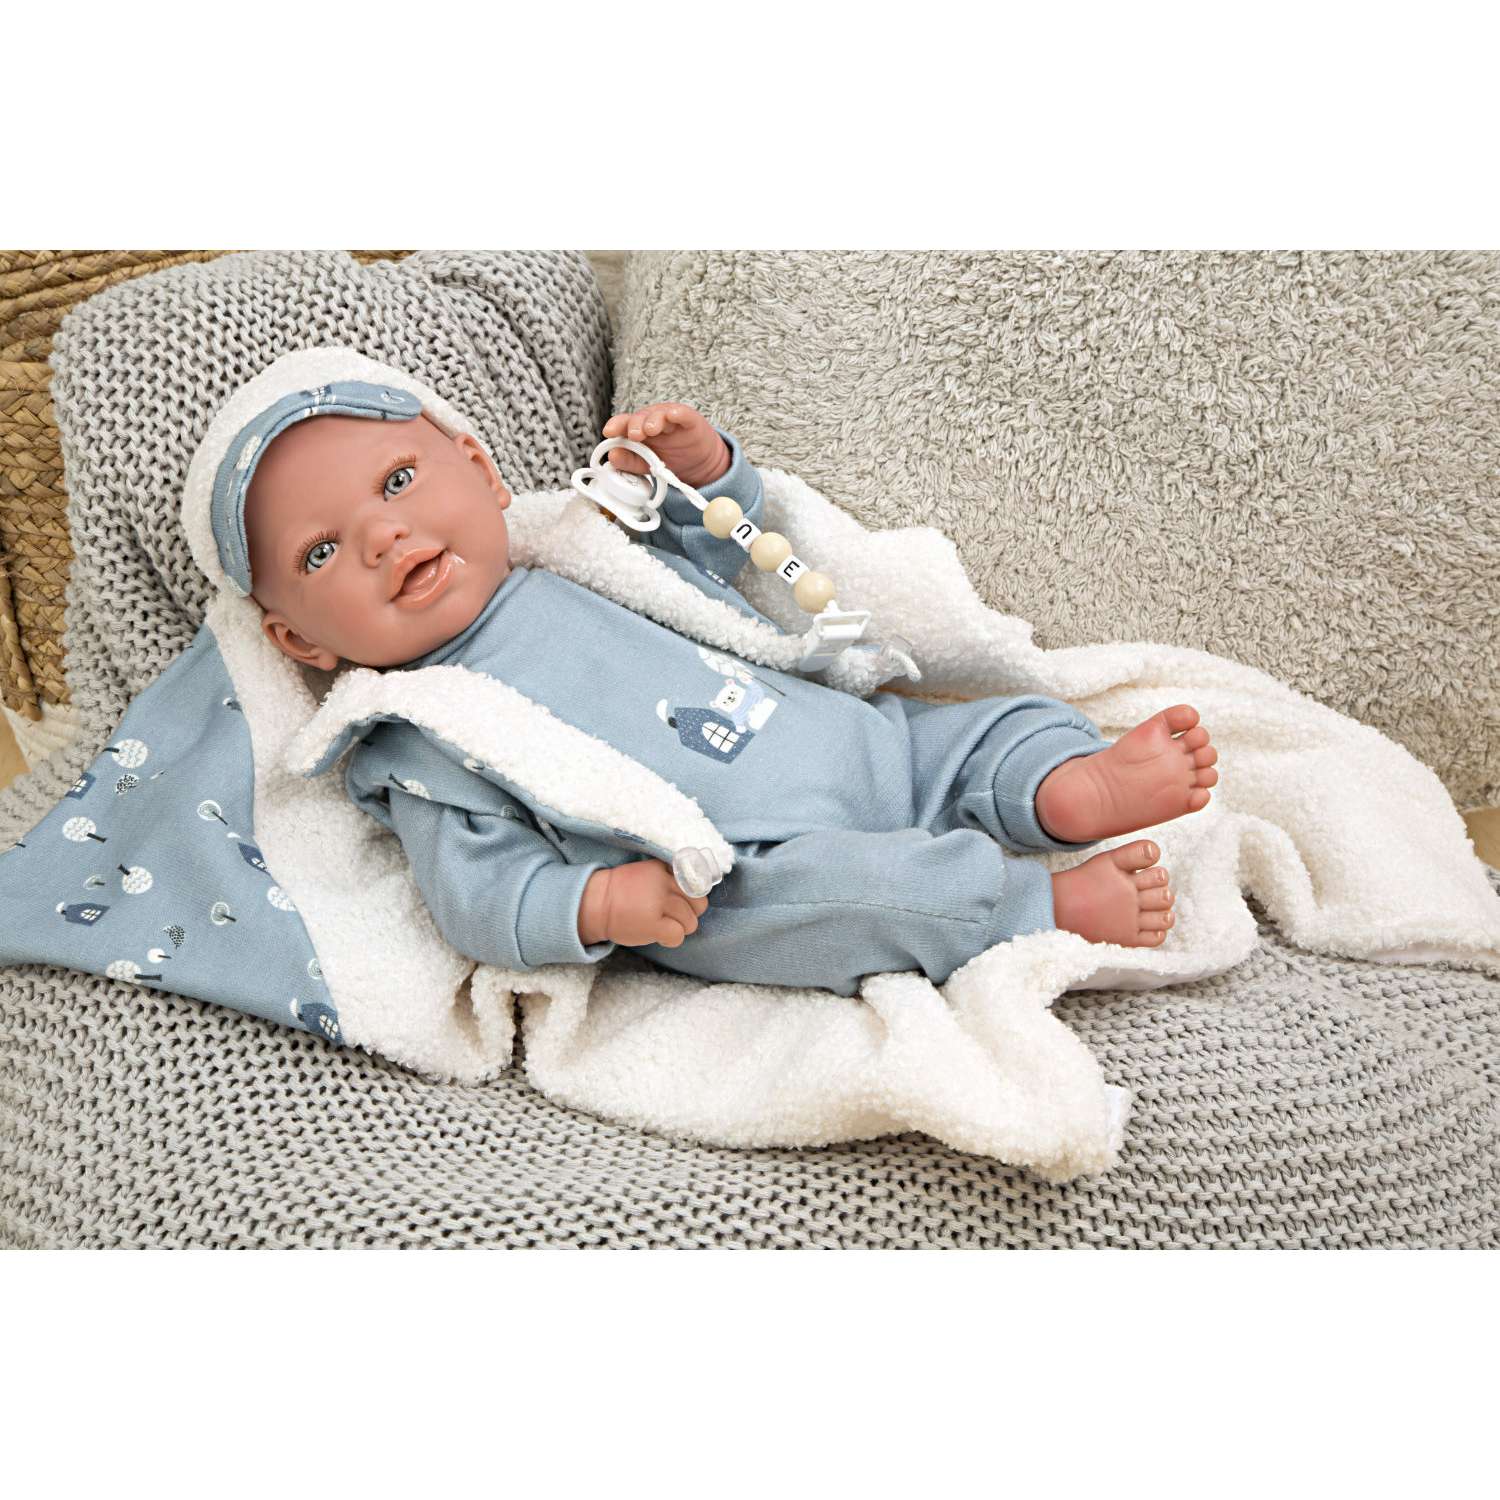 Пупс Arias Reborn Bruno мягкий новорожденный в голубой одежде с соской с одеялом 45 см Т24488 - фото 1